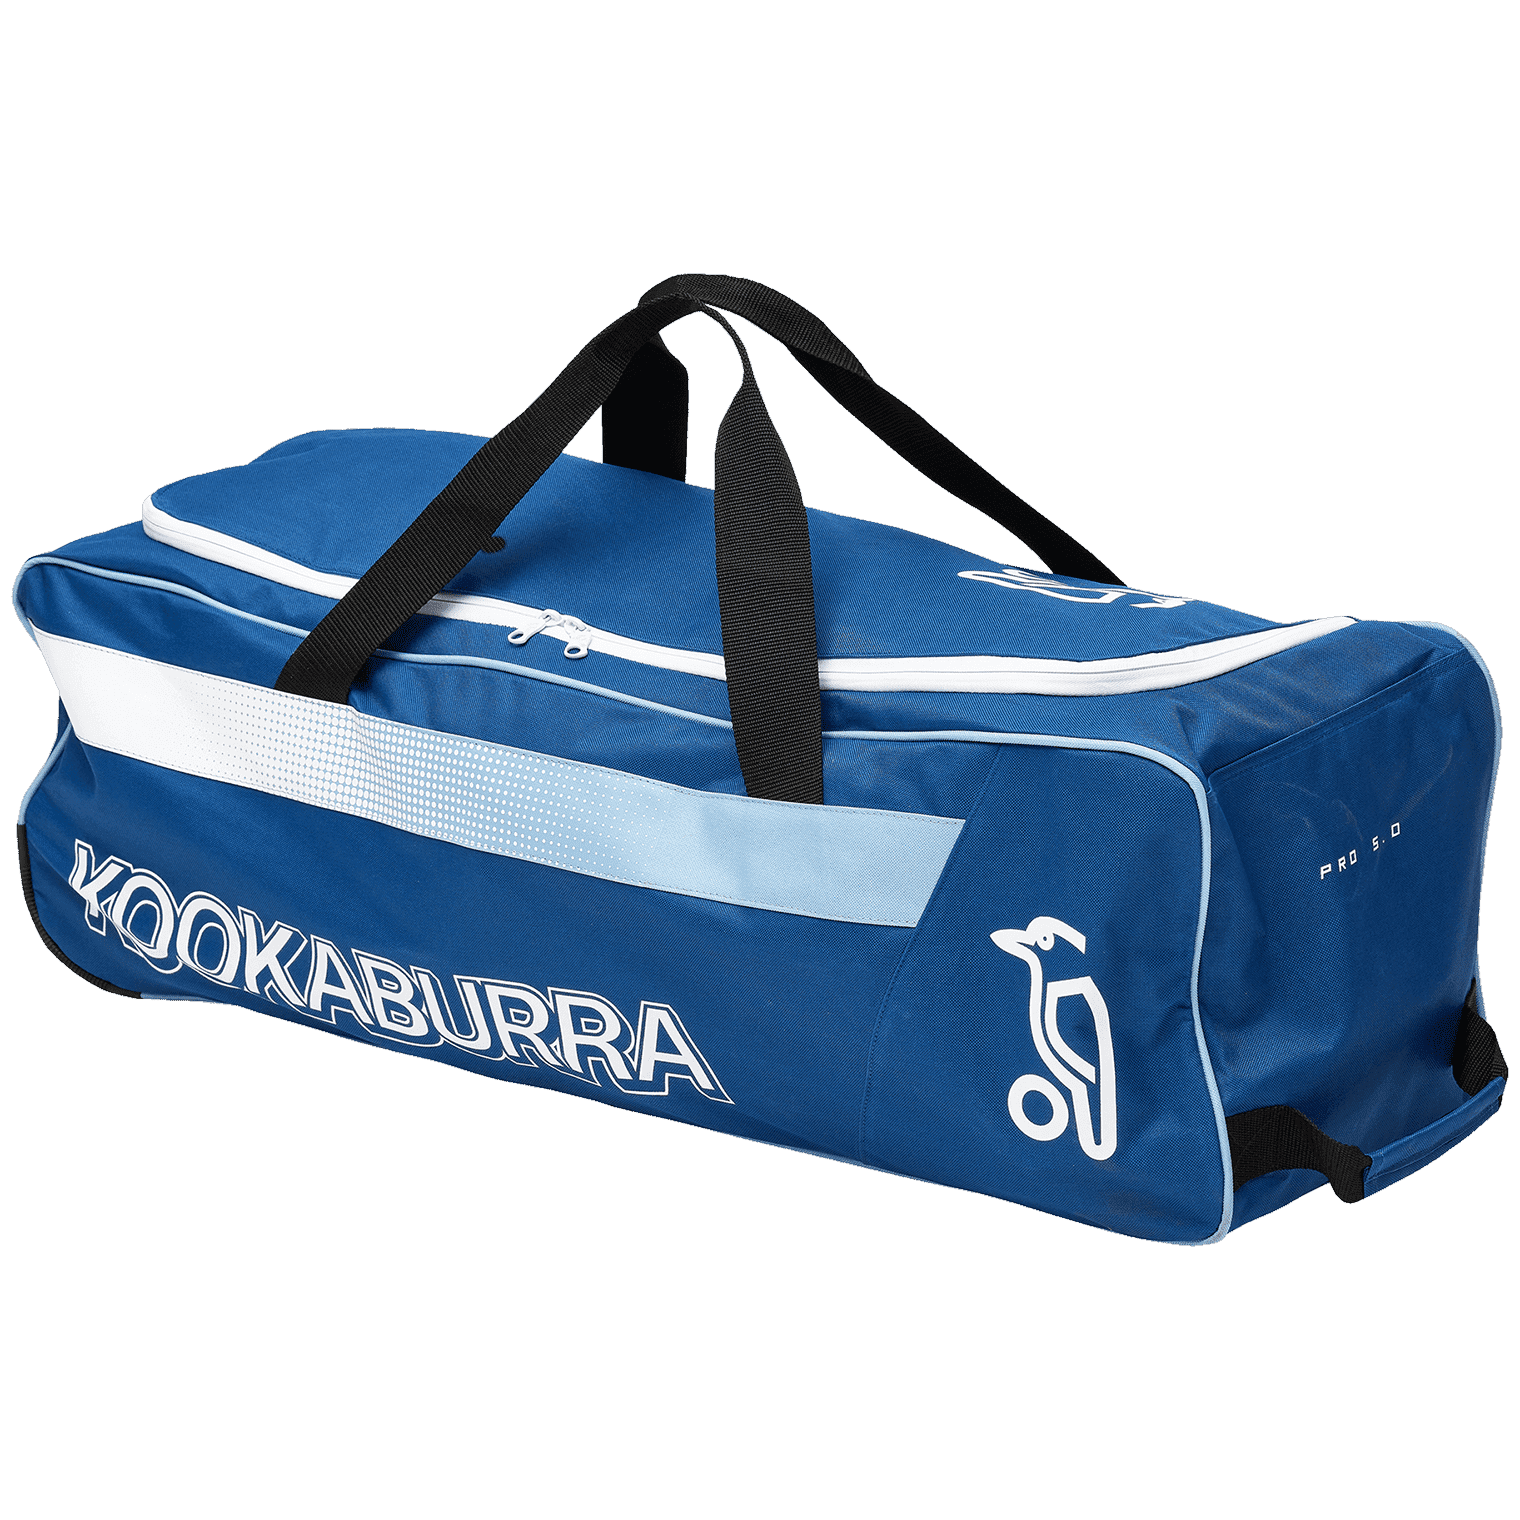 Kookaburra Cricket Bags Blue Kookaburra 5.0 Wheelie Cricket Bag